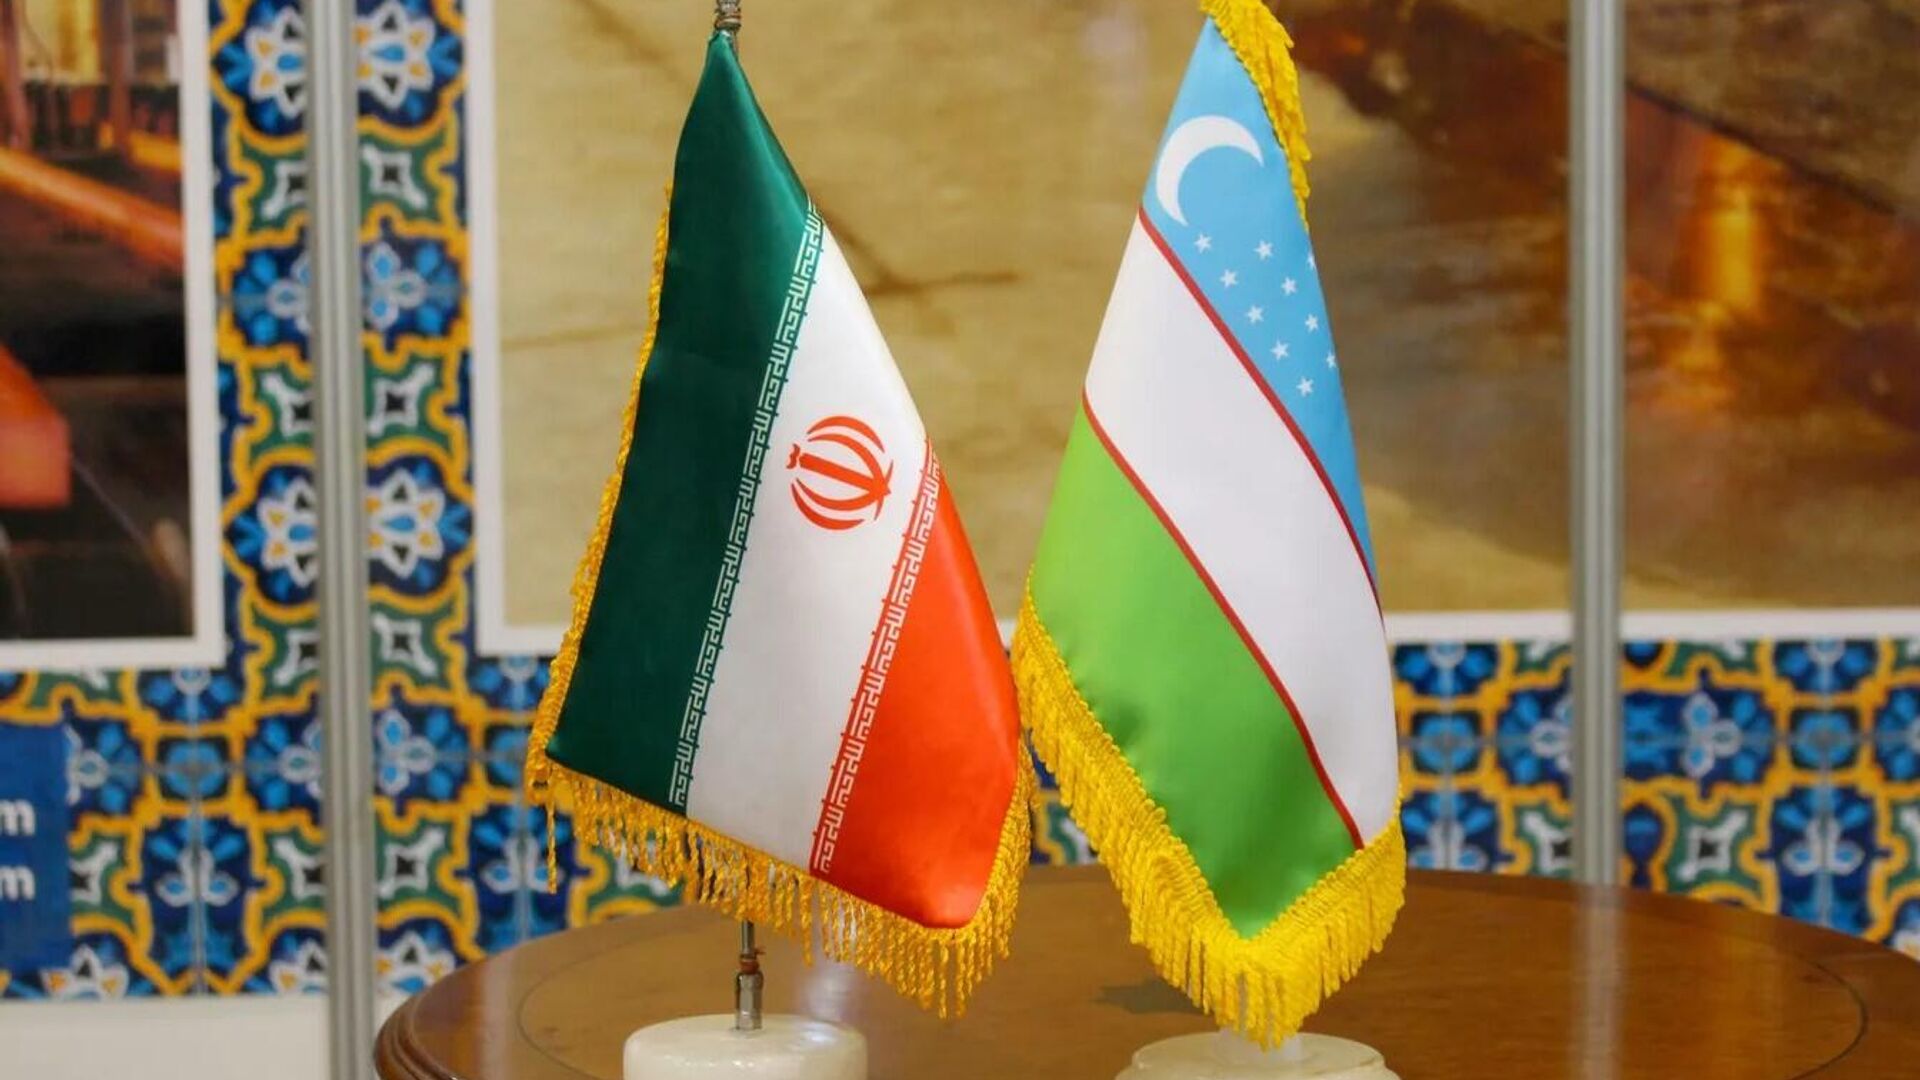 Узбекистан и Иран упростили визовый режим